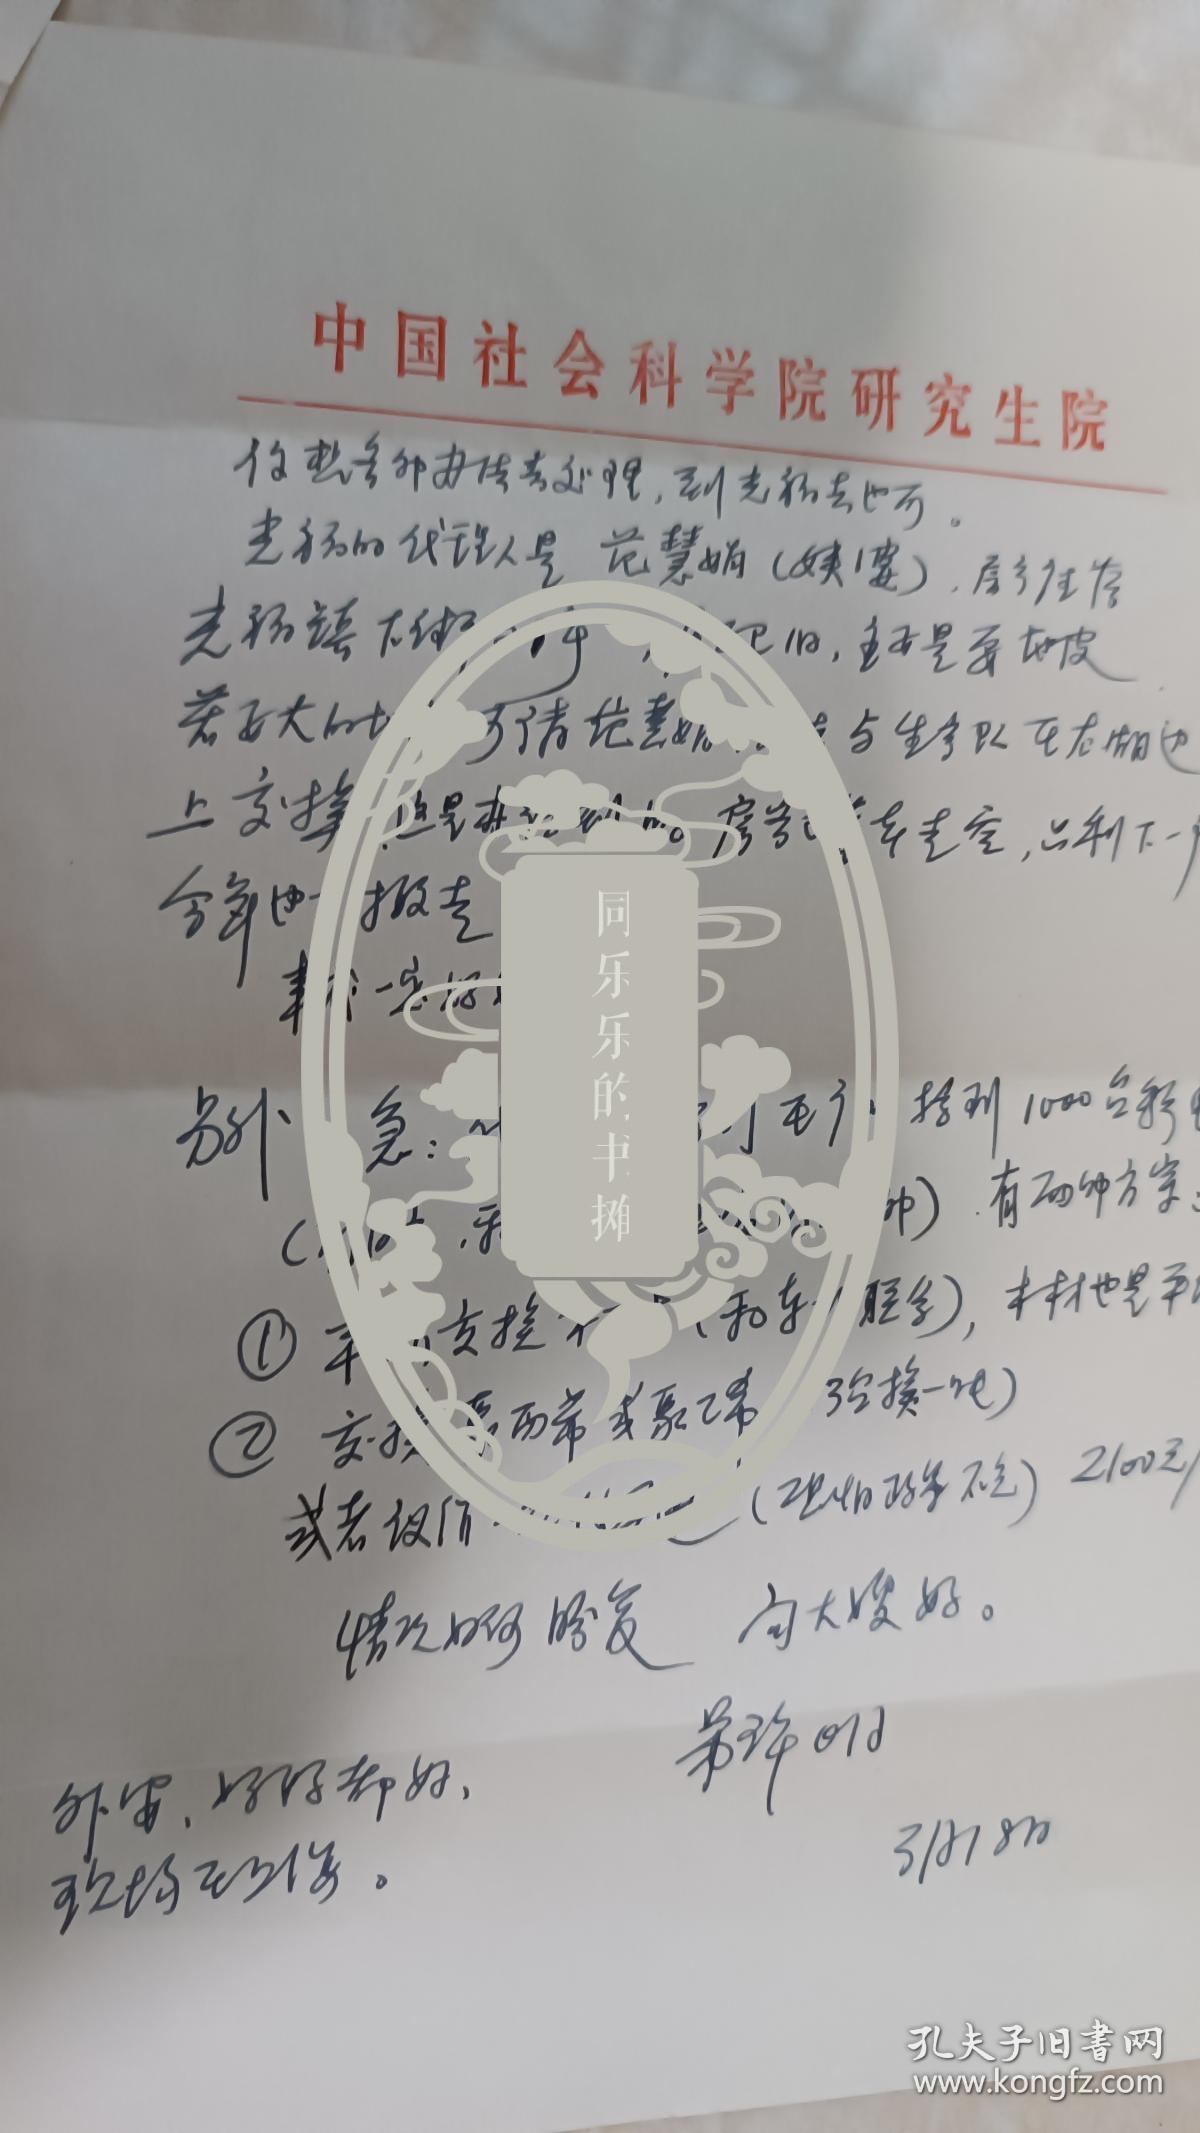 社会科学院许明写给山东文学社高梦龄的信附封，谈到上海房价800-1300等